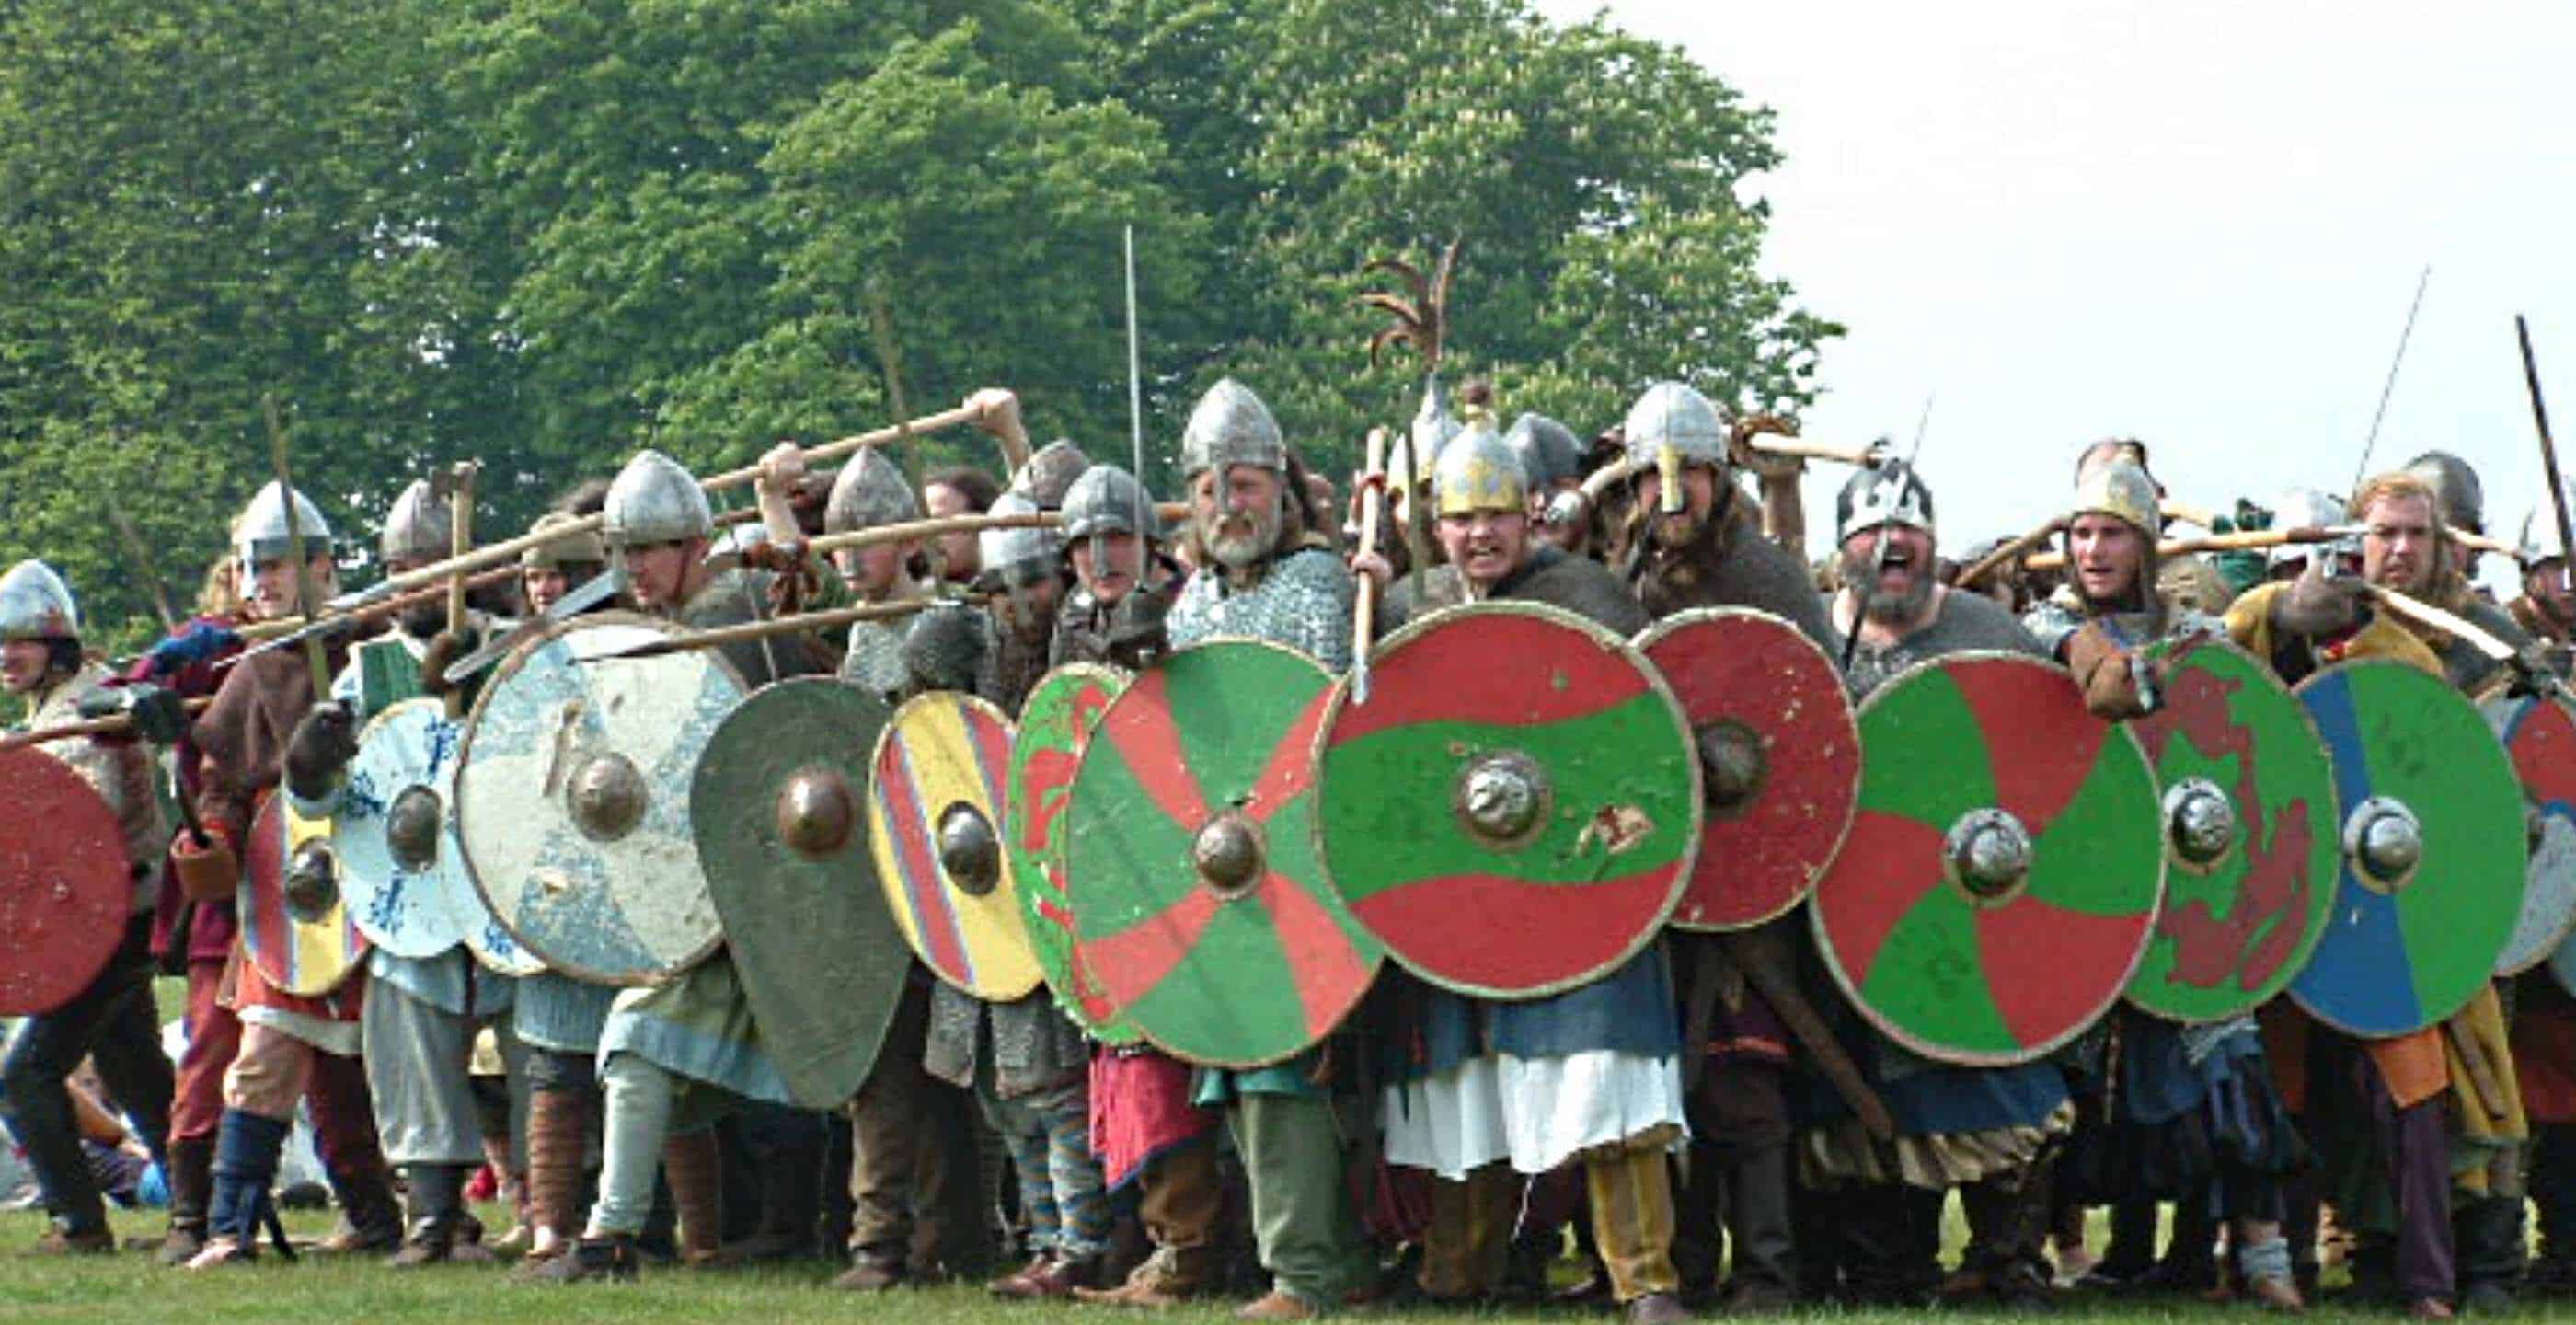 Battle of Maldon - Wikipedia